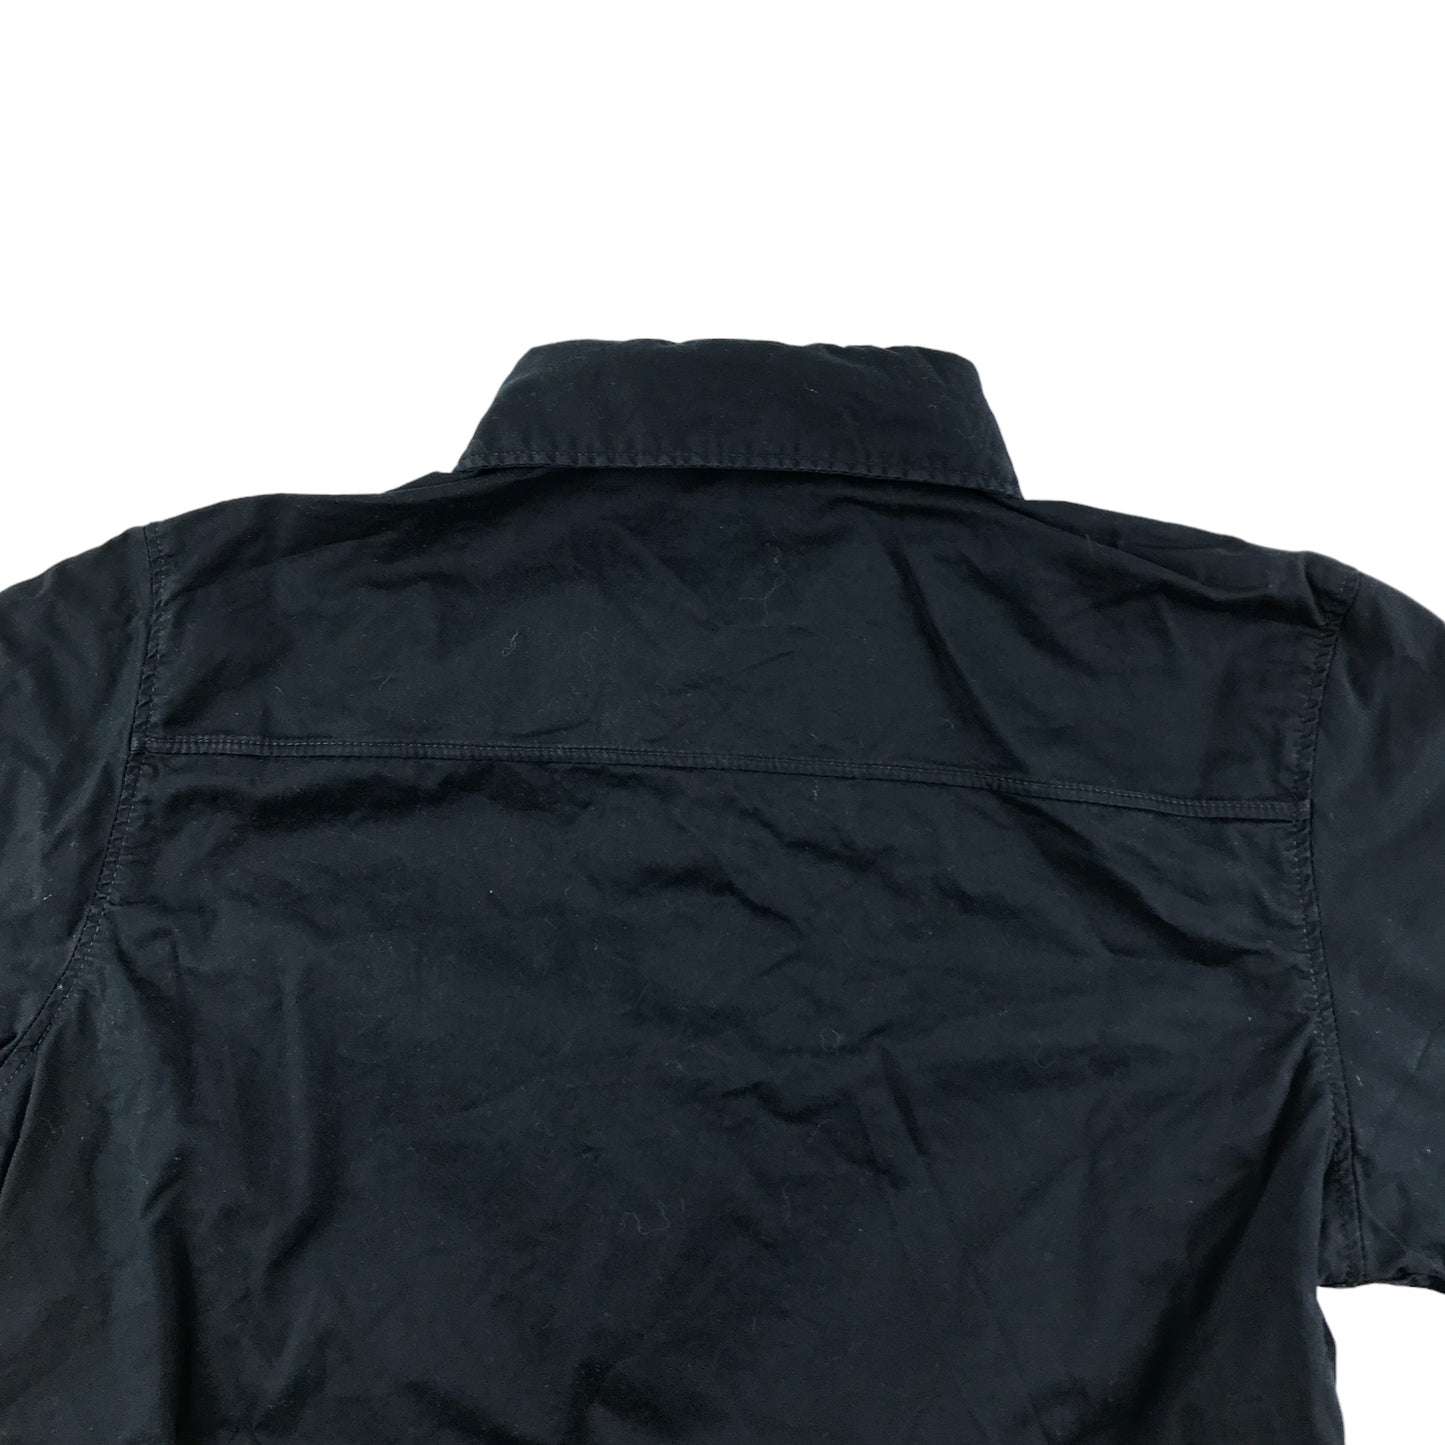 H&M Shirt Age 11 Dark Navy Short Sleeve Button Up Cotton